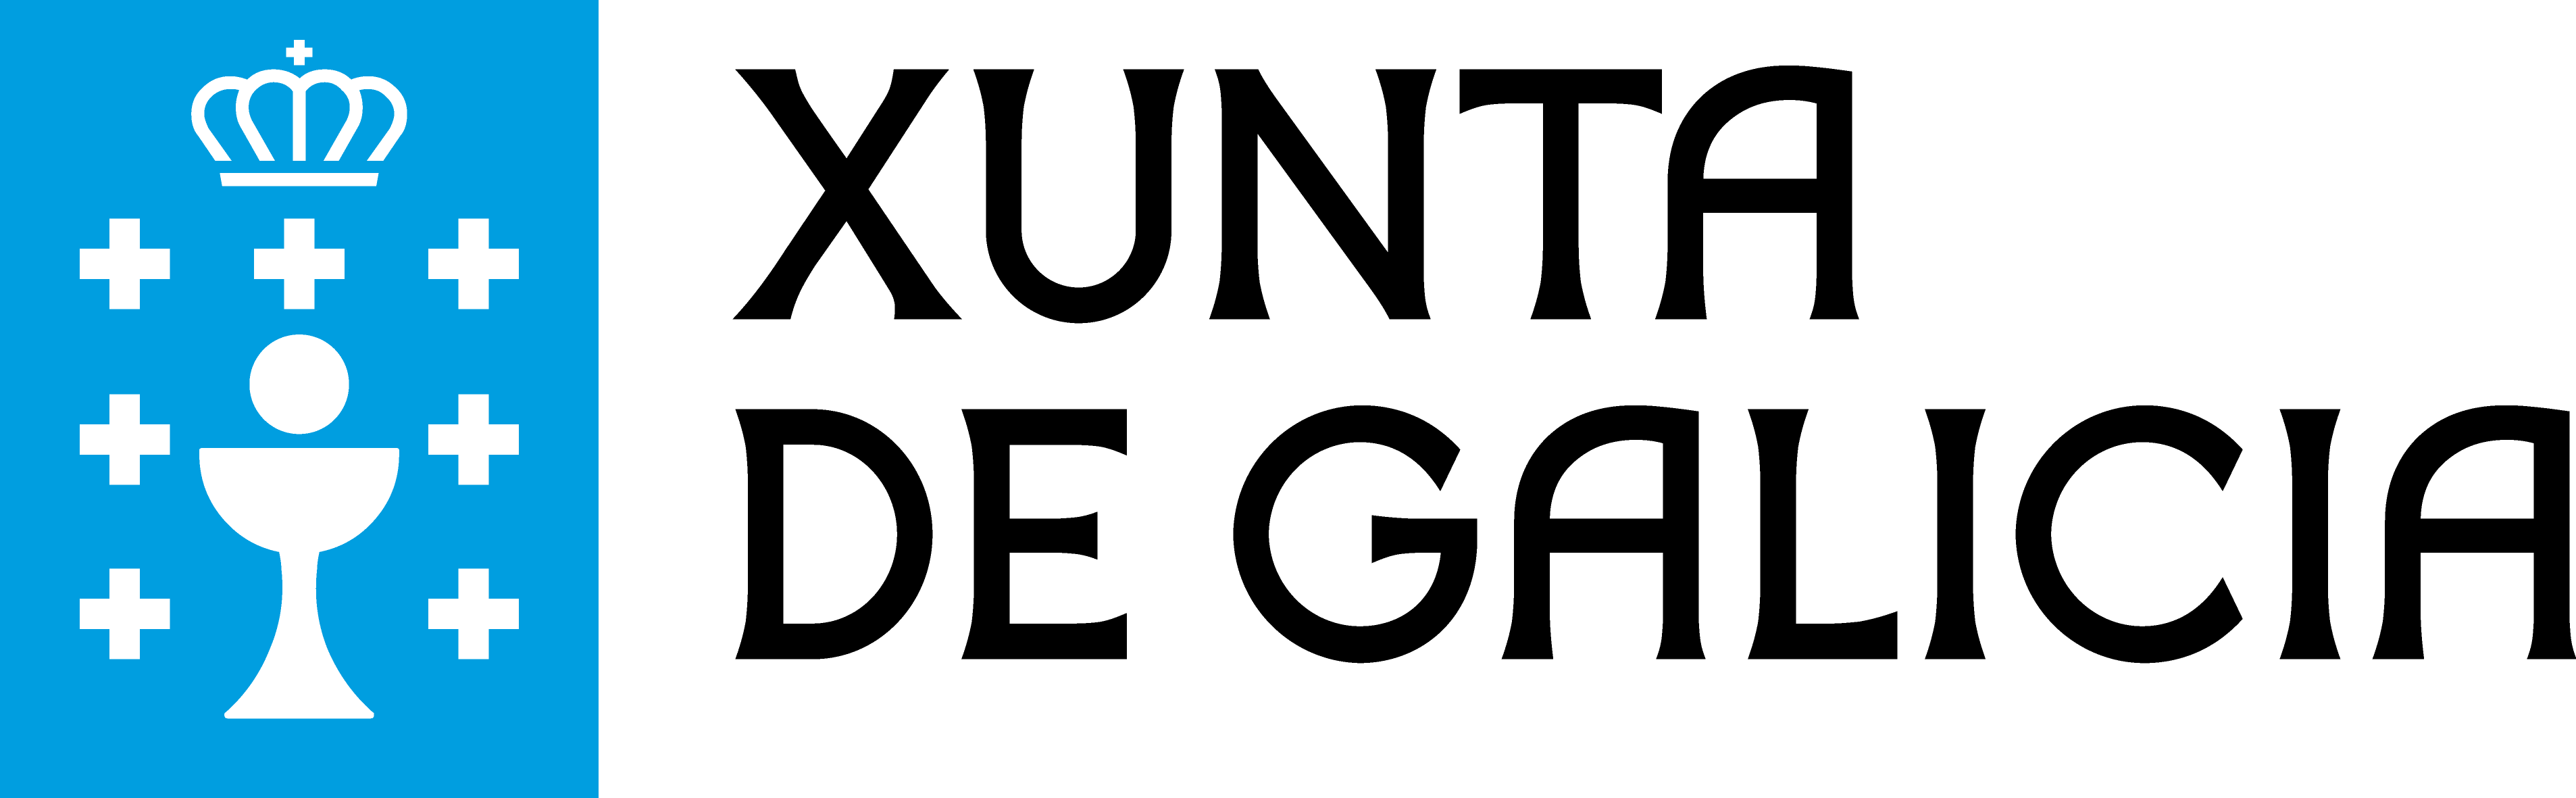 Xunta Galicia Logo